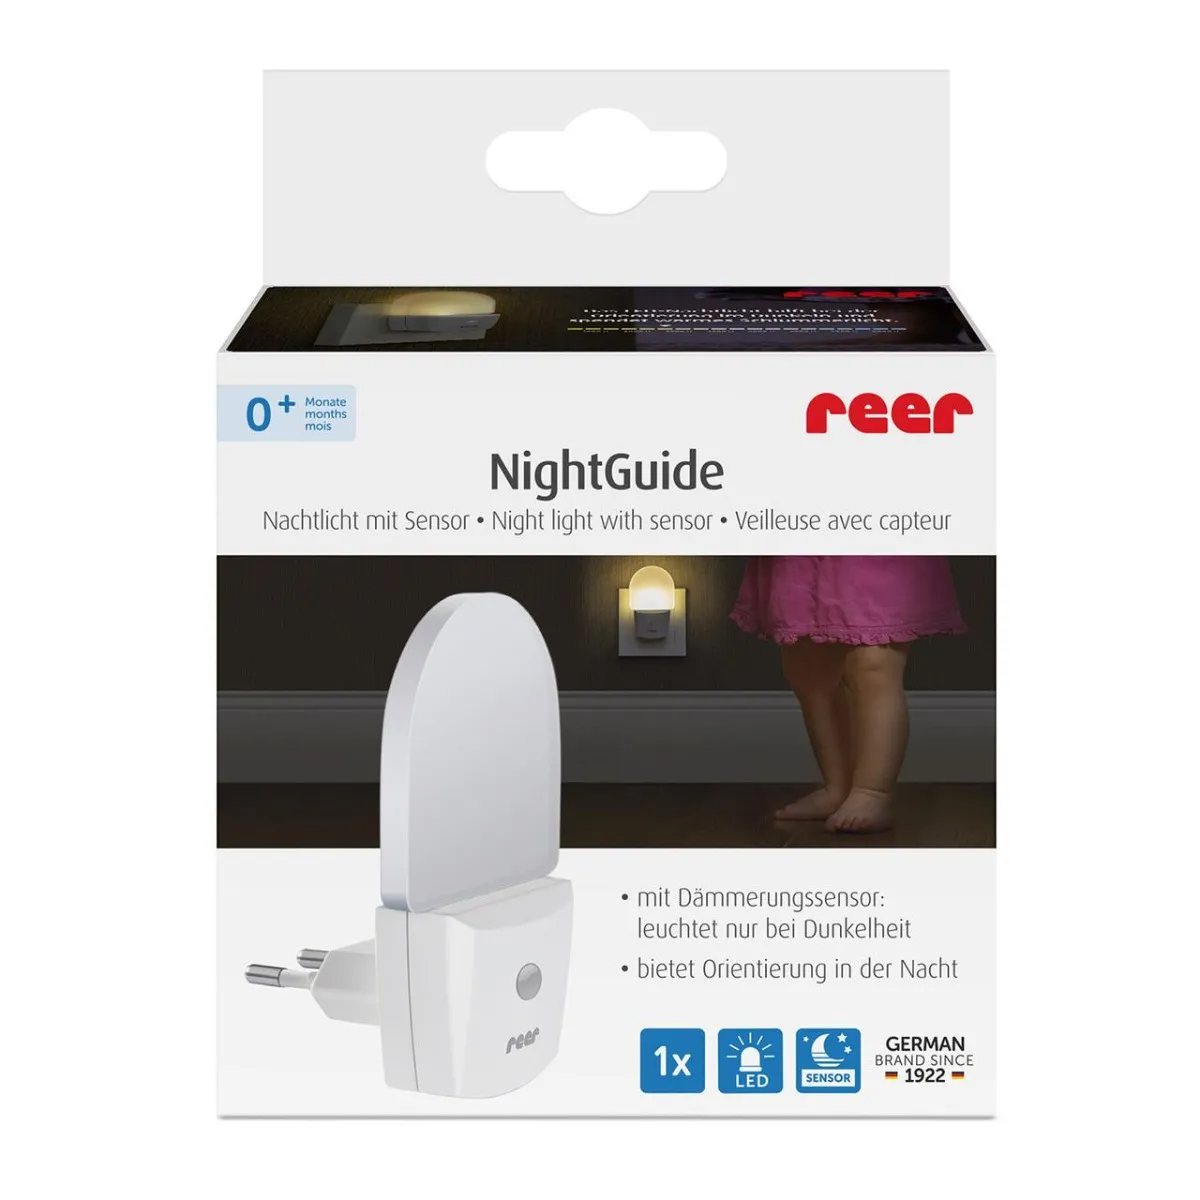 Lampa de veghe pentru priza cu senzor de noapte sau zi pentru +0 luni NightGuide, 1 bucata, Reer 